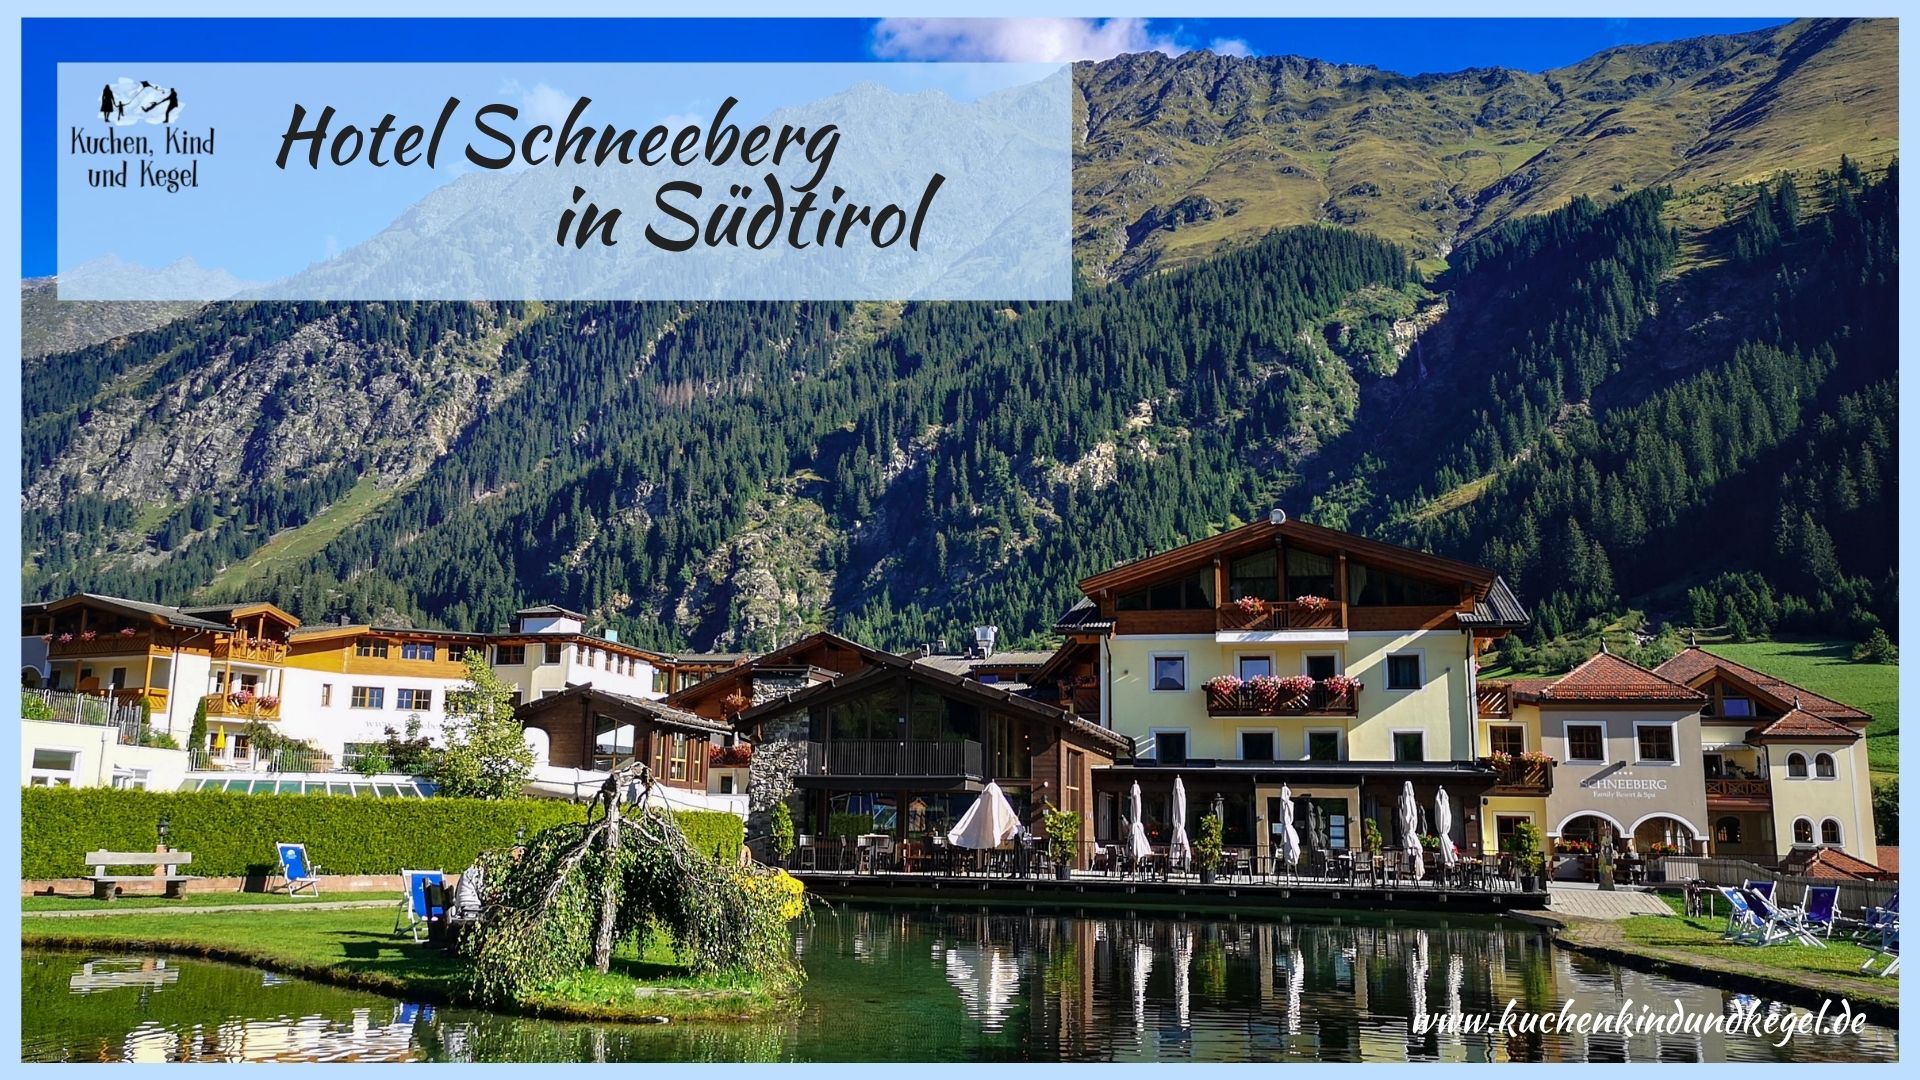 Hotel Schneeberg in Südtirol – Ein Paradies für Wanderer, Ruhesuchende und Familien